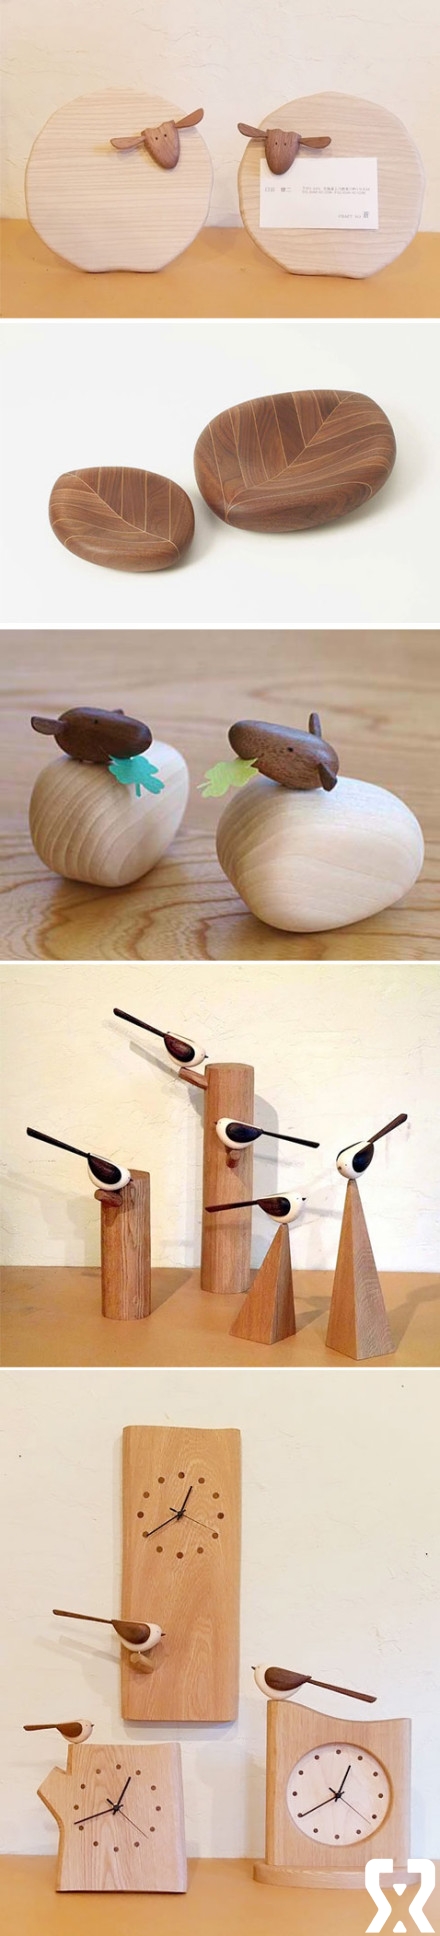 北海道木艺家臼田健二的几件作品。